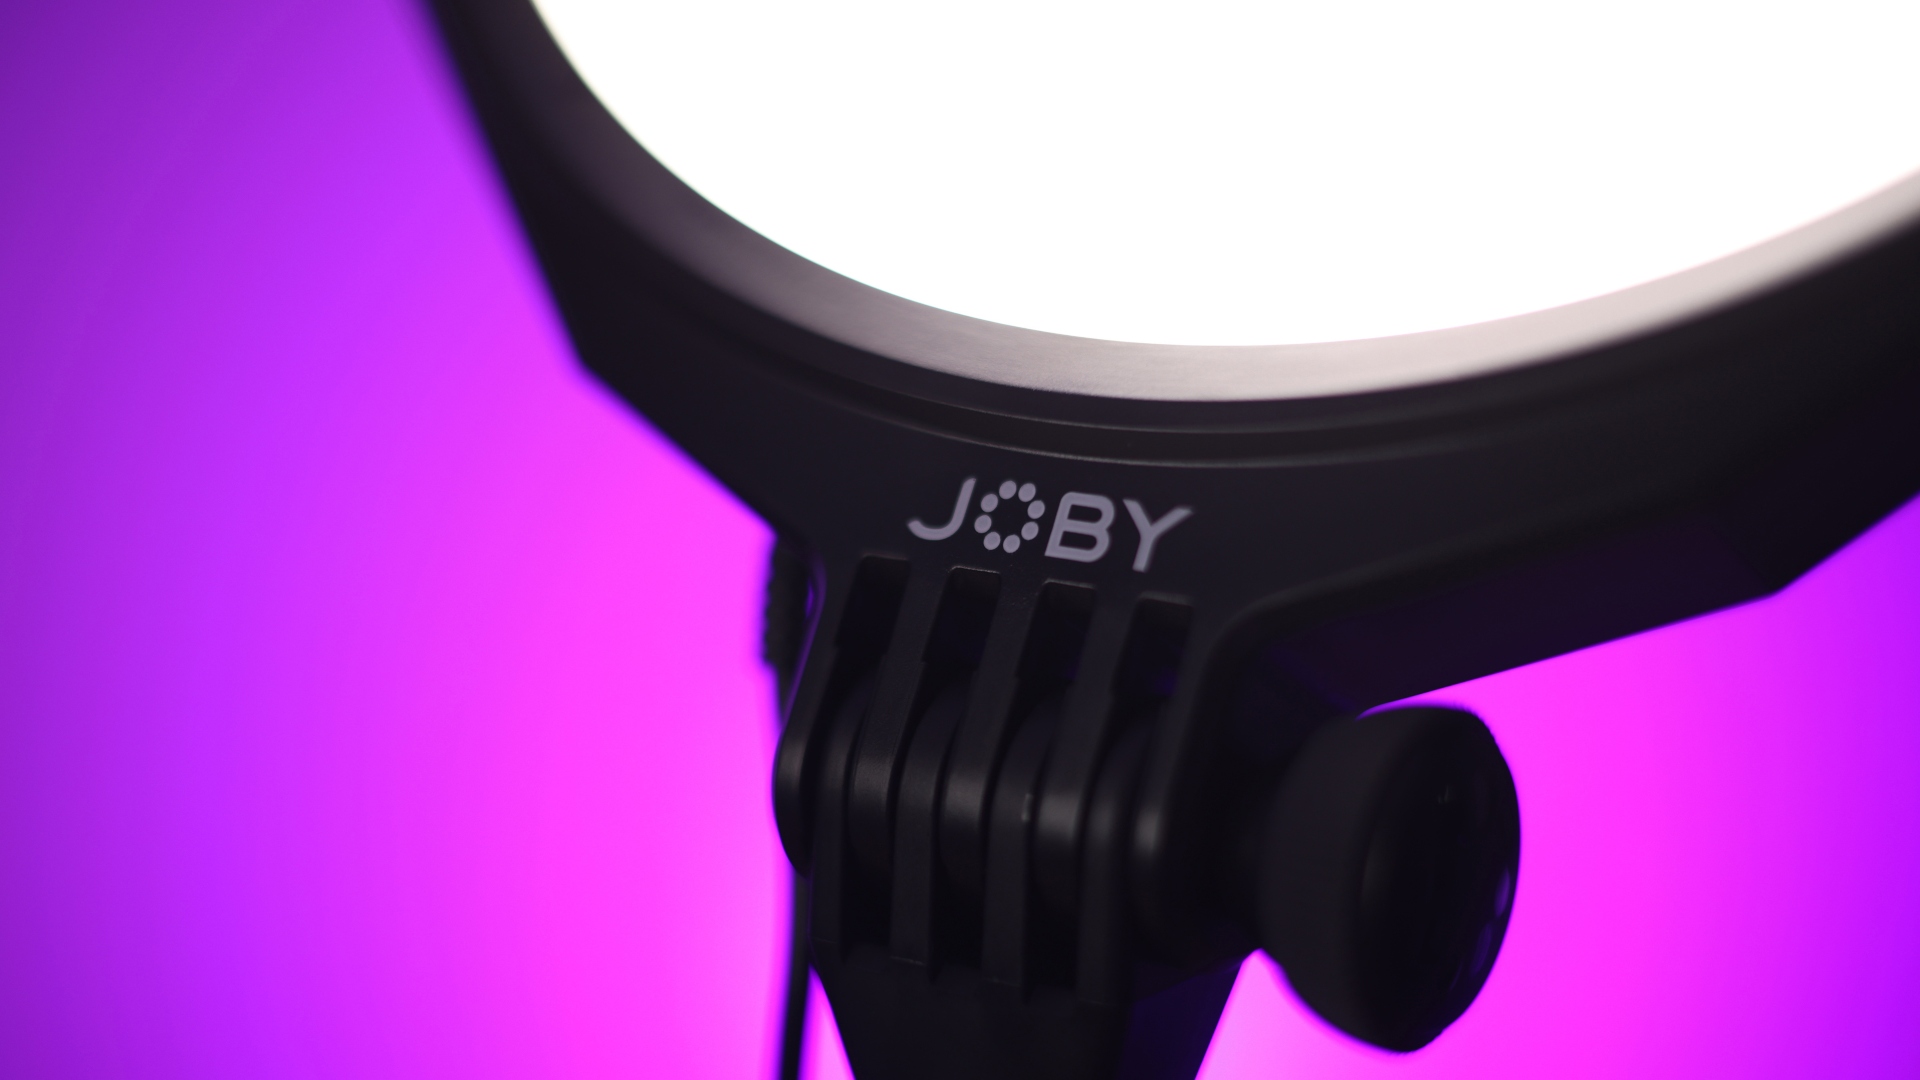 Joby Beamo Studio Key Light inceleme görüntüsü, ışıktaki marka ambleminin yakından görünümünü gösteriyor.